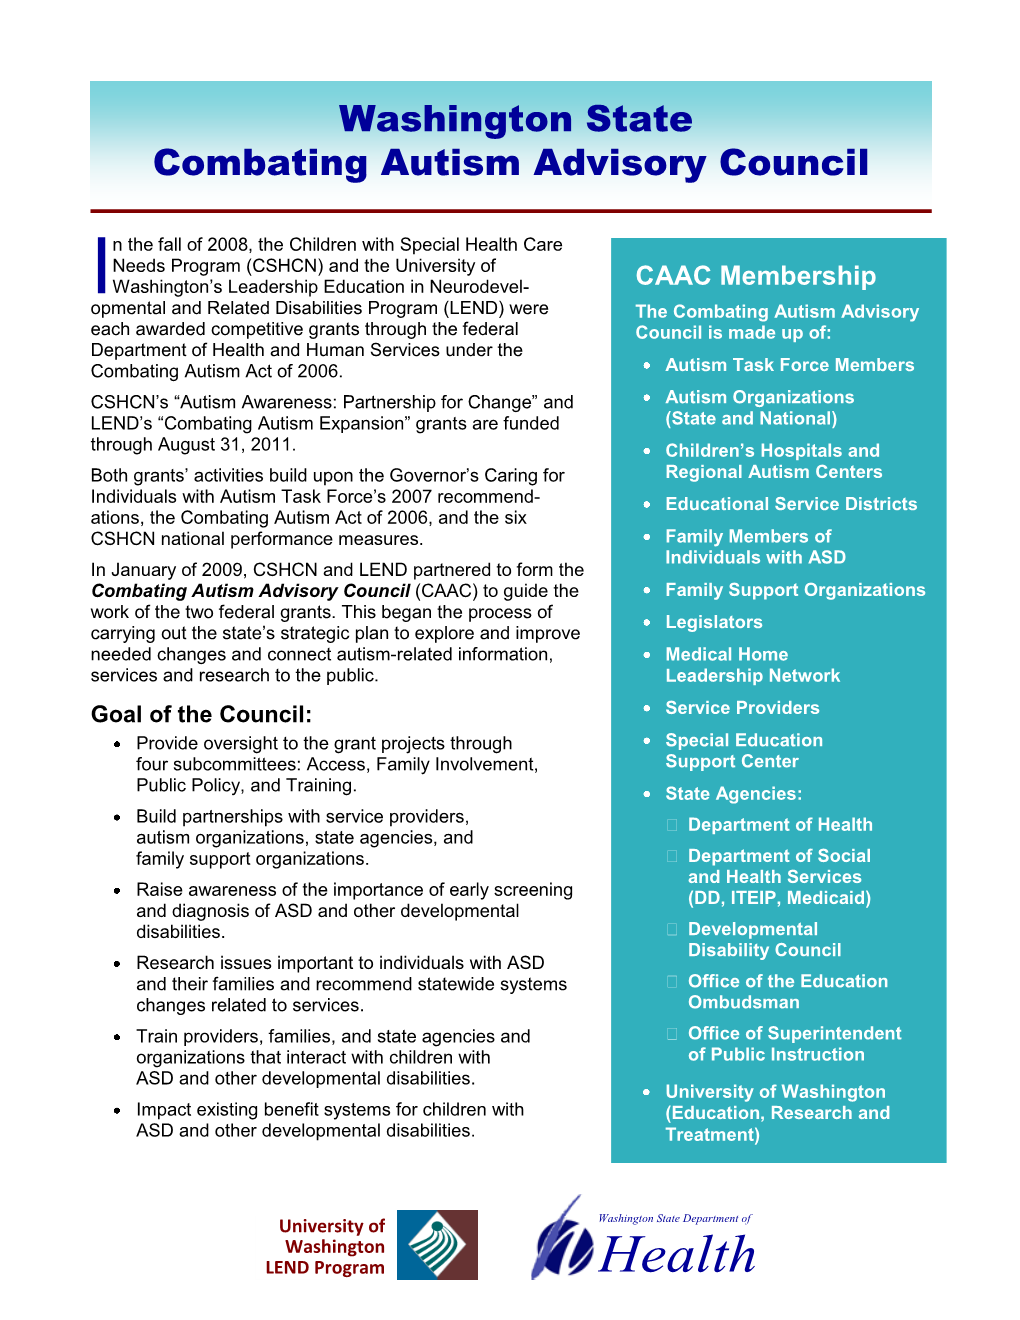 Washington State Combating Autism Advisory Council